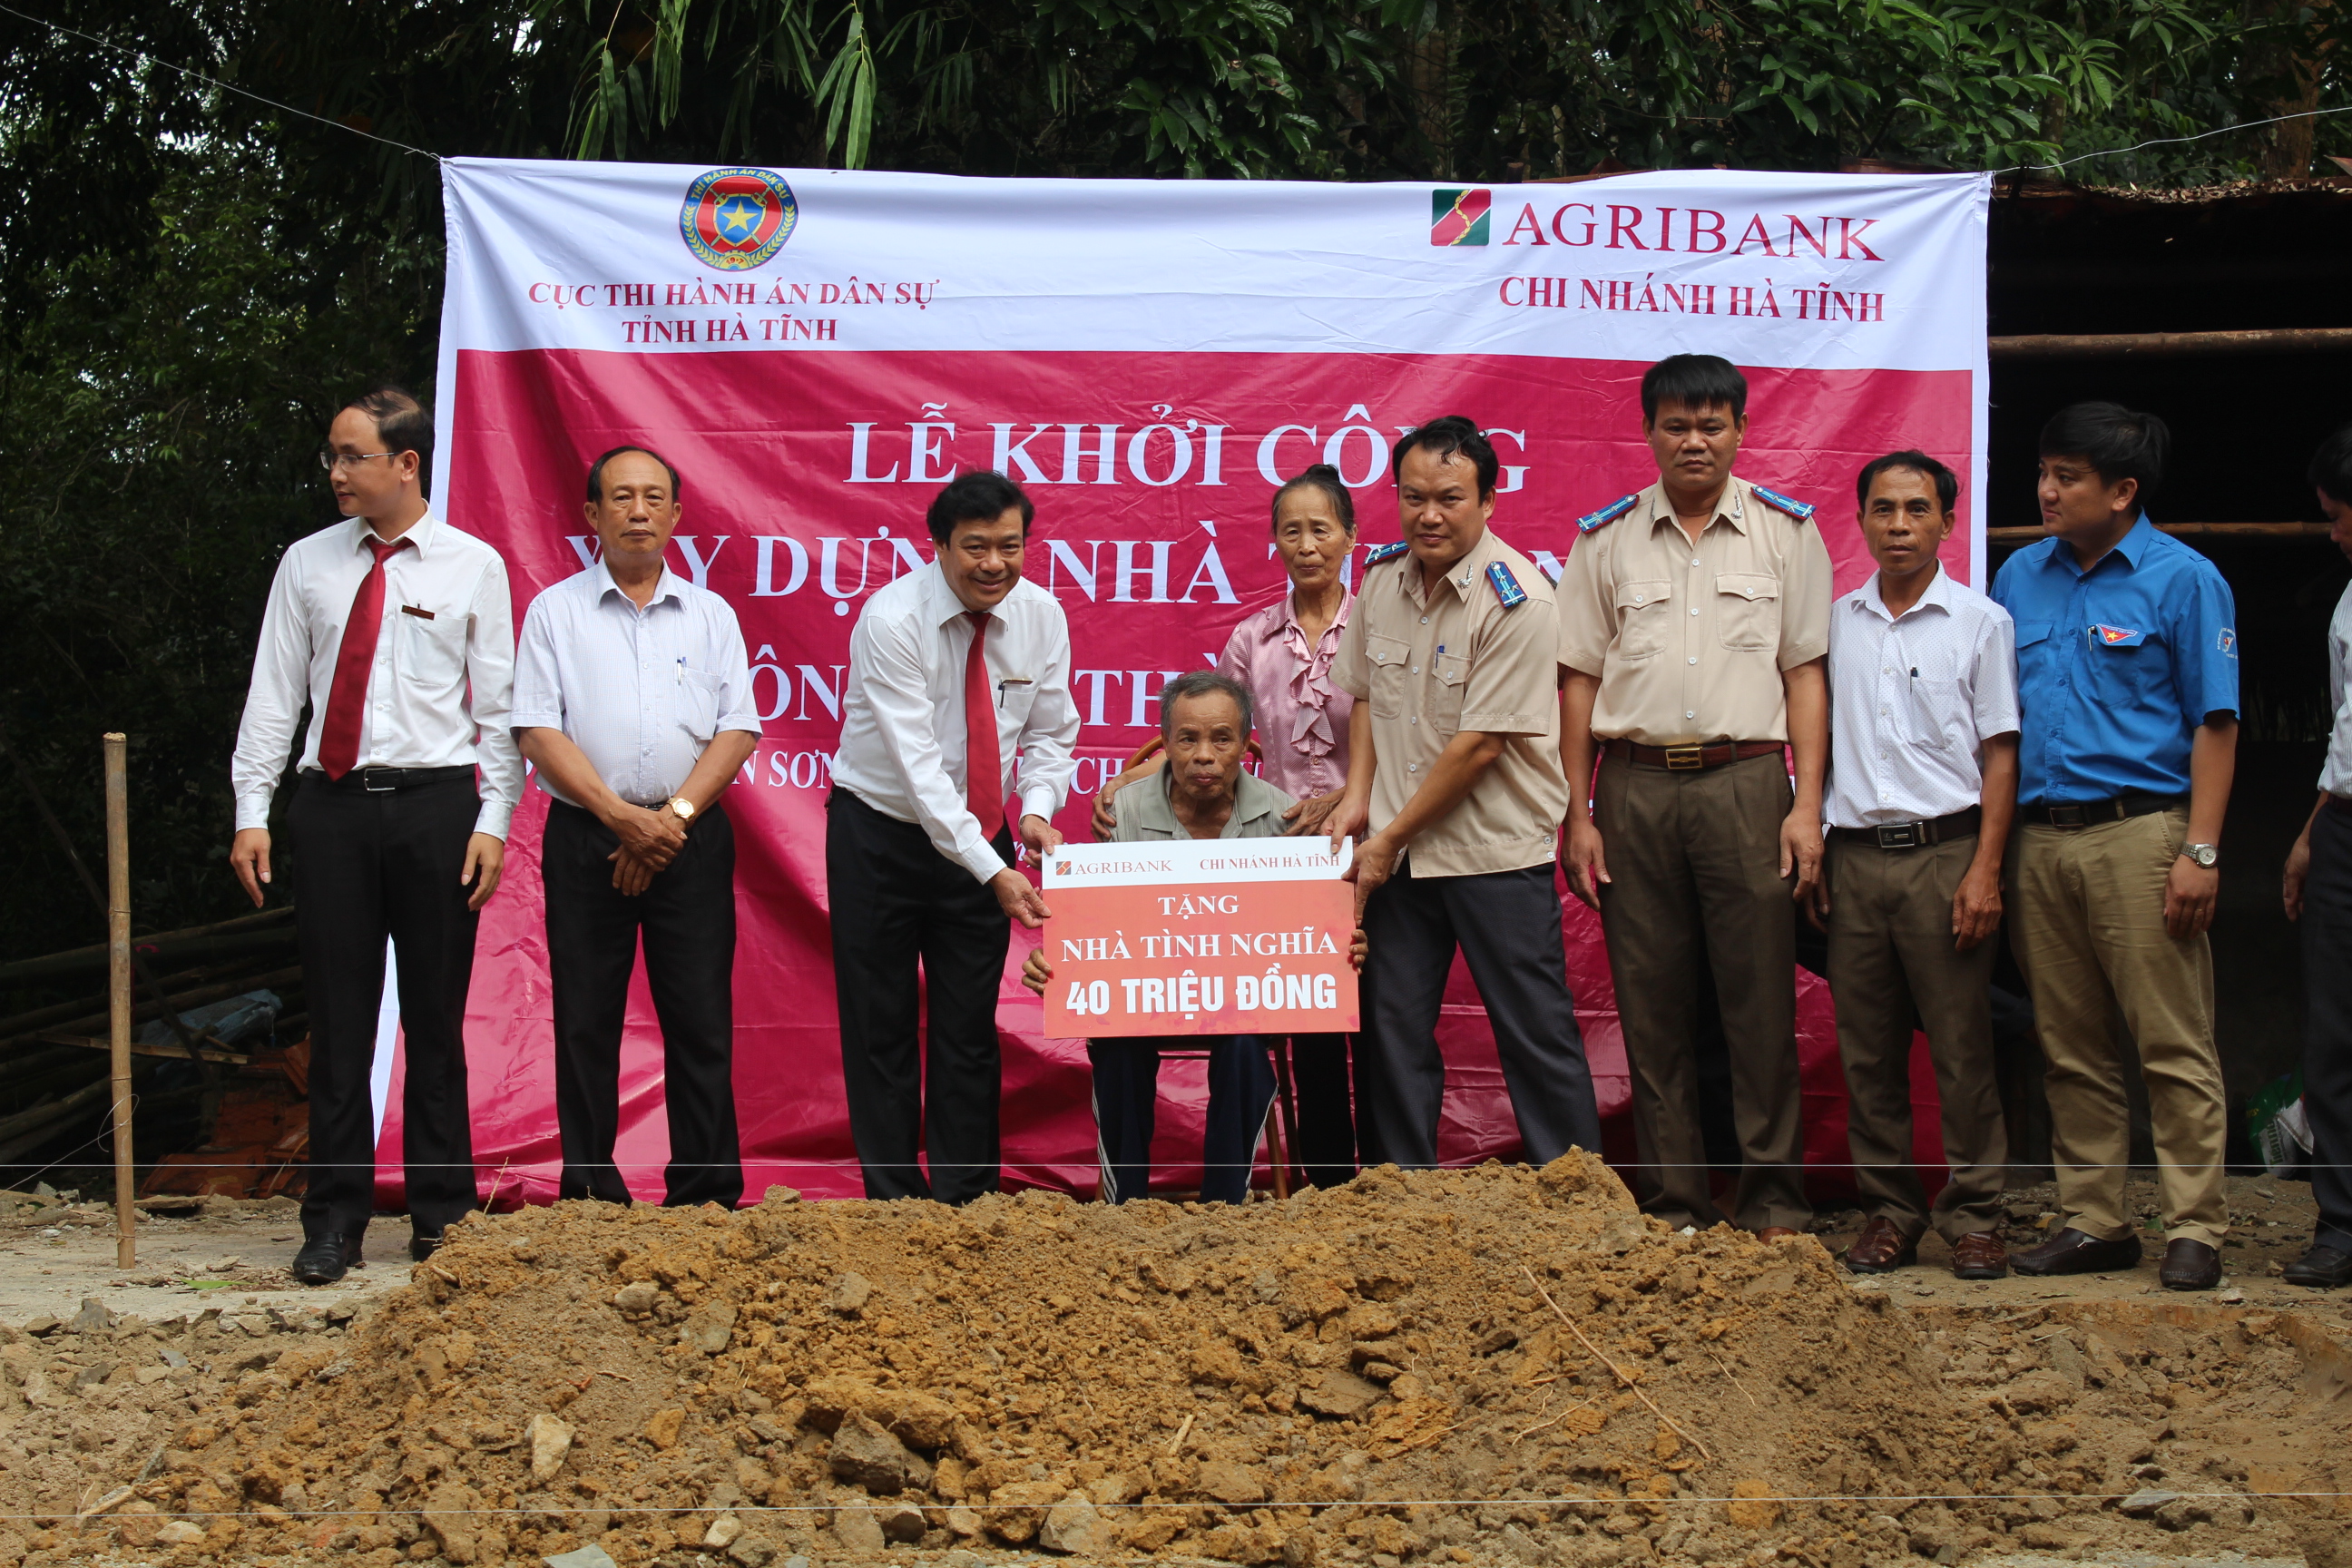 Cục THADS Hà Tĩnh và Ngân hàng Agribank tỉnh phối hợp tài trợ khởi công xây dựng nhà tình nghĩa tại xã Thạch Sơn, Thạch Hà